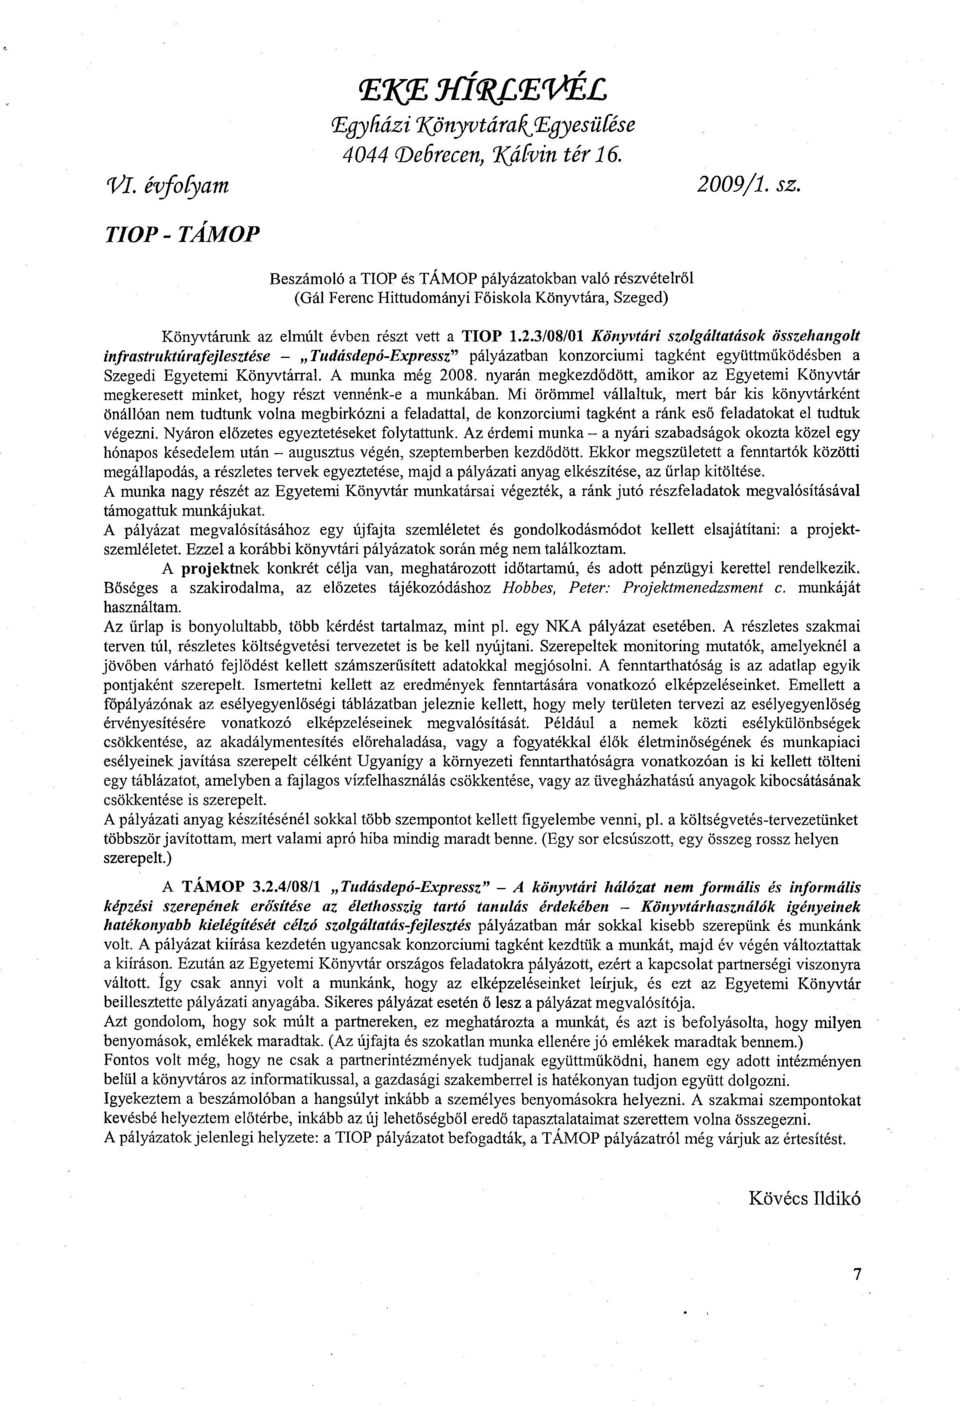 3/08/01 Könyvtári szolgáltatások összehangolt infrastruktúrafejlesztése - Tudásdepó-Expressz" pályázatban konzorciumi tagként együttműködésben a Szegedi Egyetemi Könyvtárral. A munka még 2008.